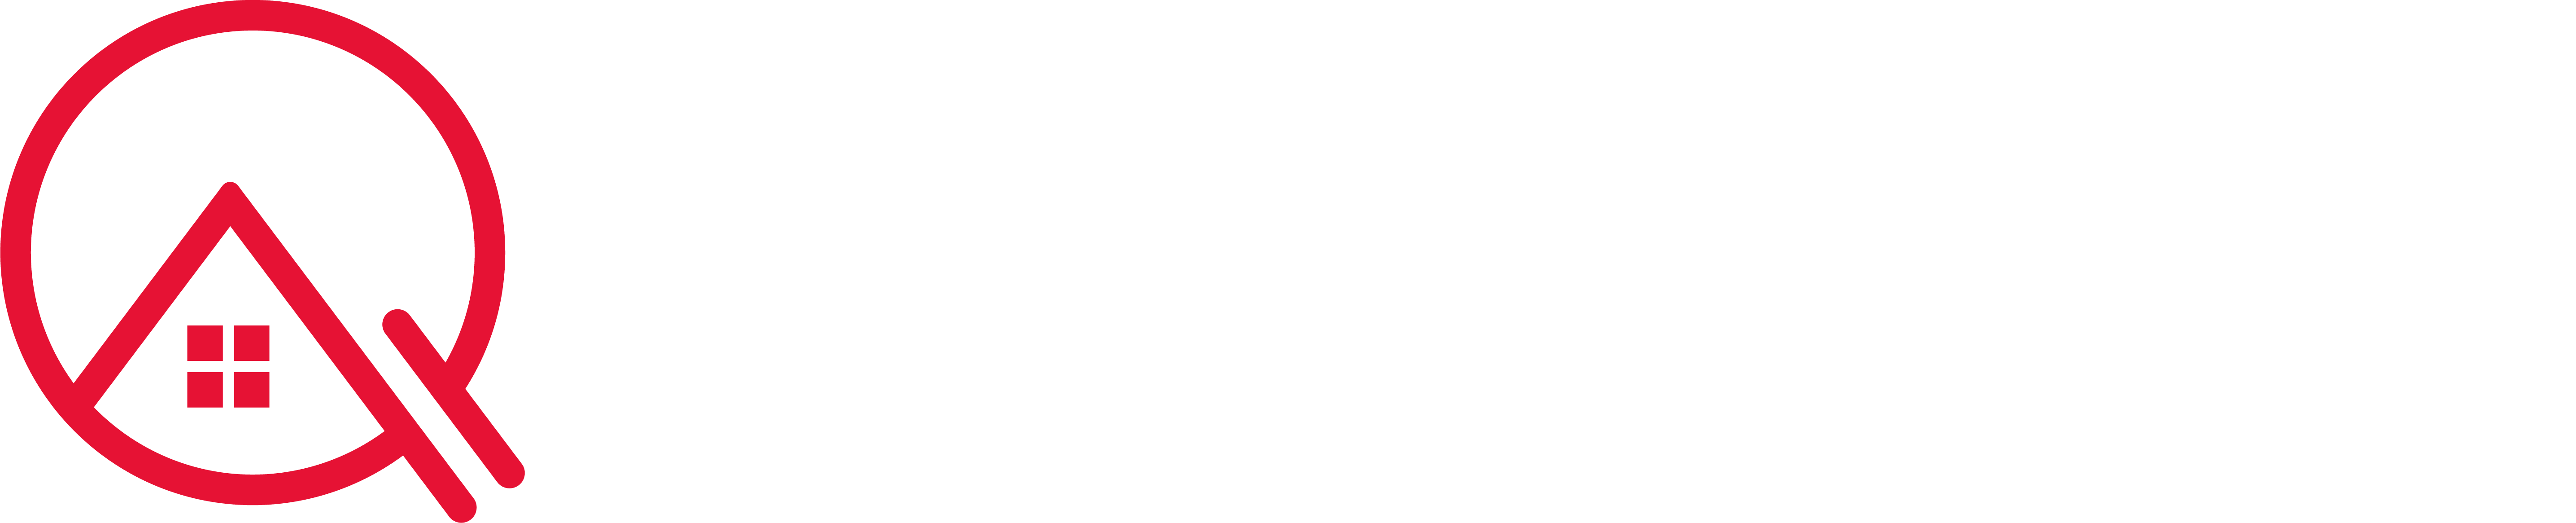 William Quilan Auctioneers